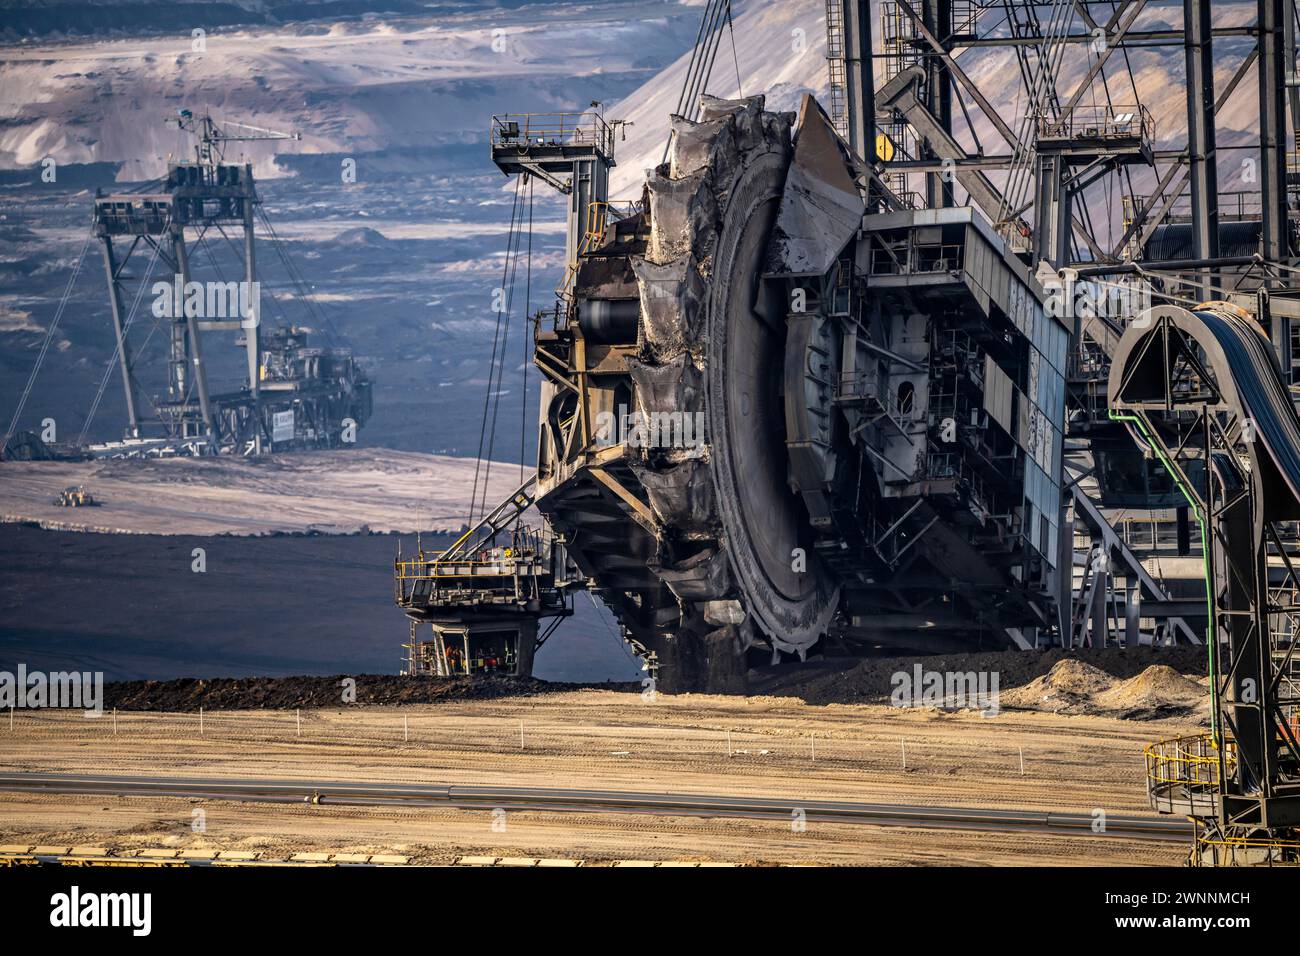 Opencast lignite mine Garzweiler, bucket wheel excavator mining overburden, coal, near Jüchen, NRW, Germany, Stock Photo